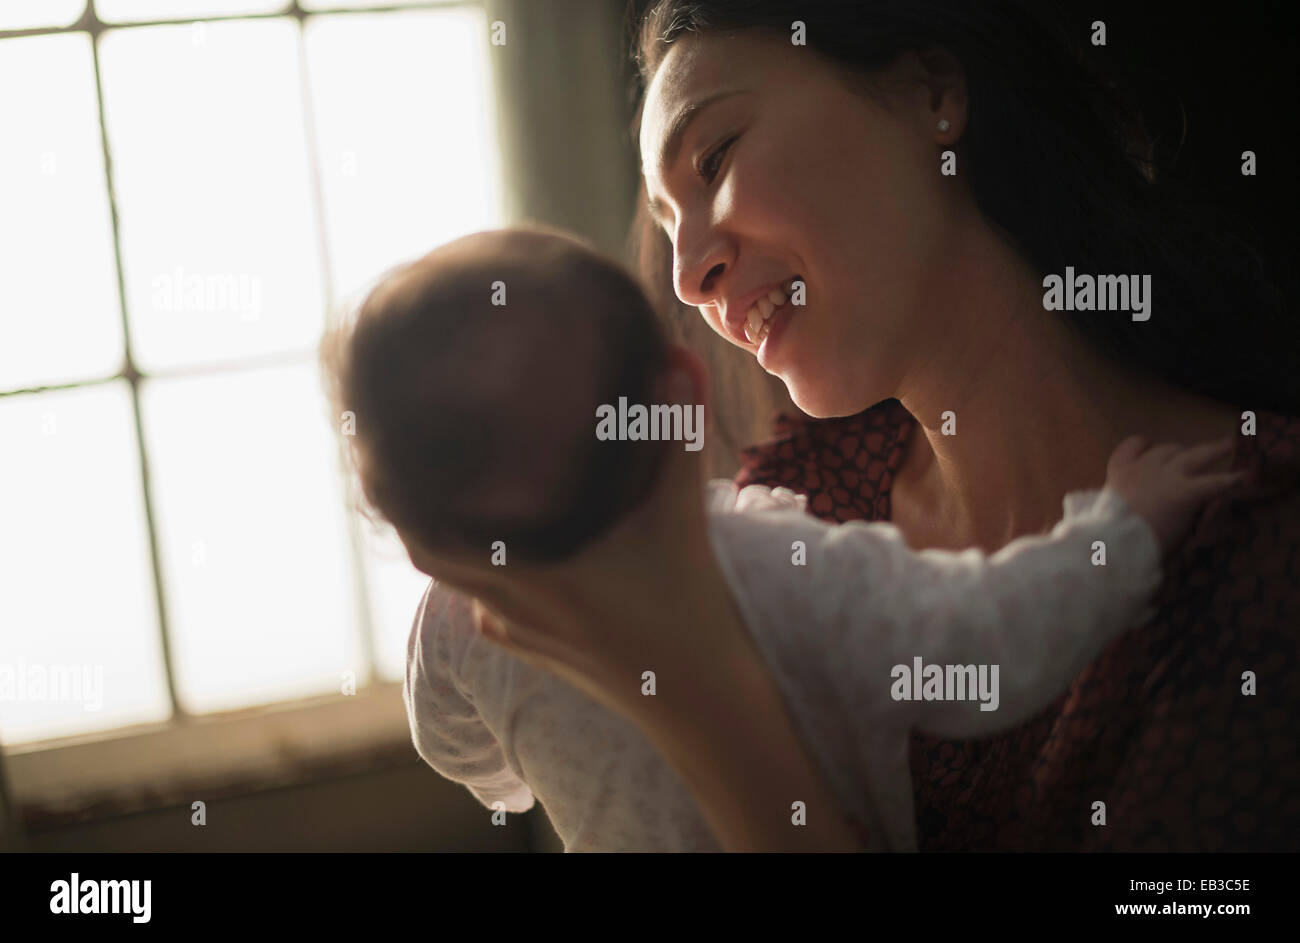 Asiatische Mutter halten Baby in der Nähe von Fenster Stockfoto